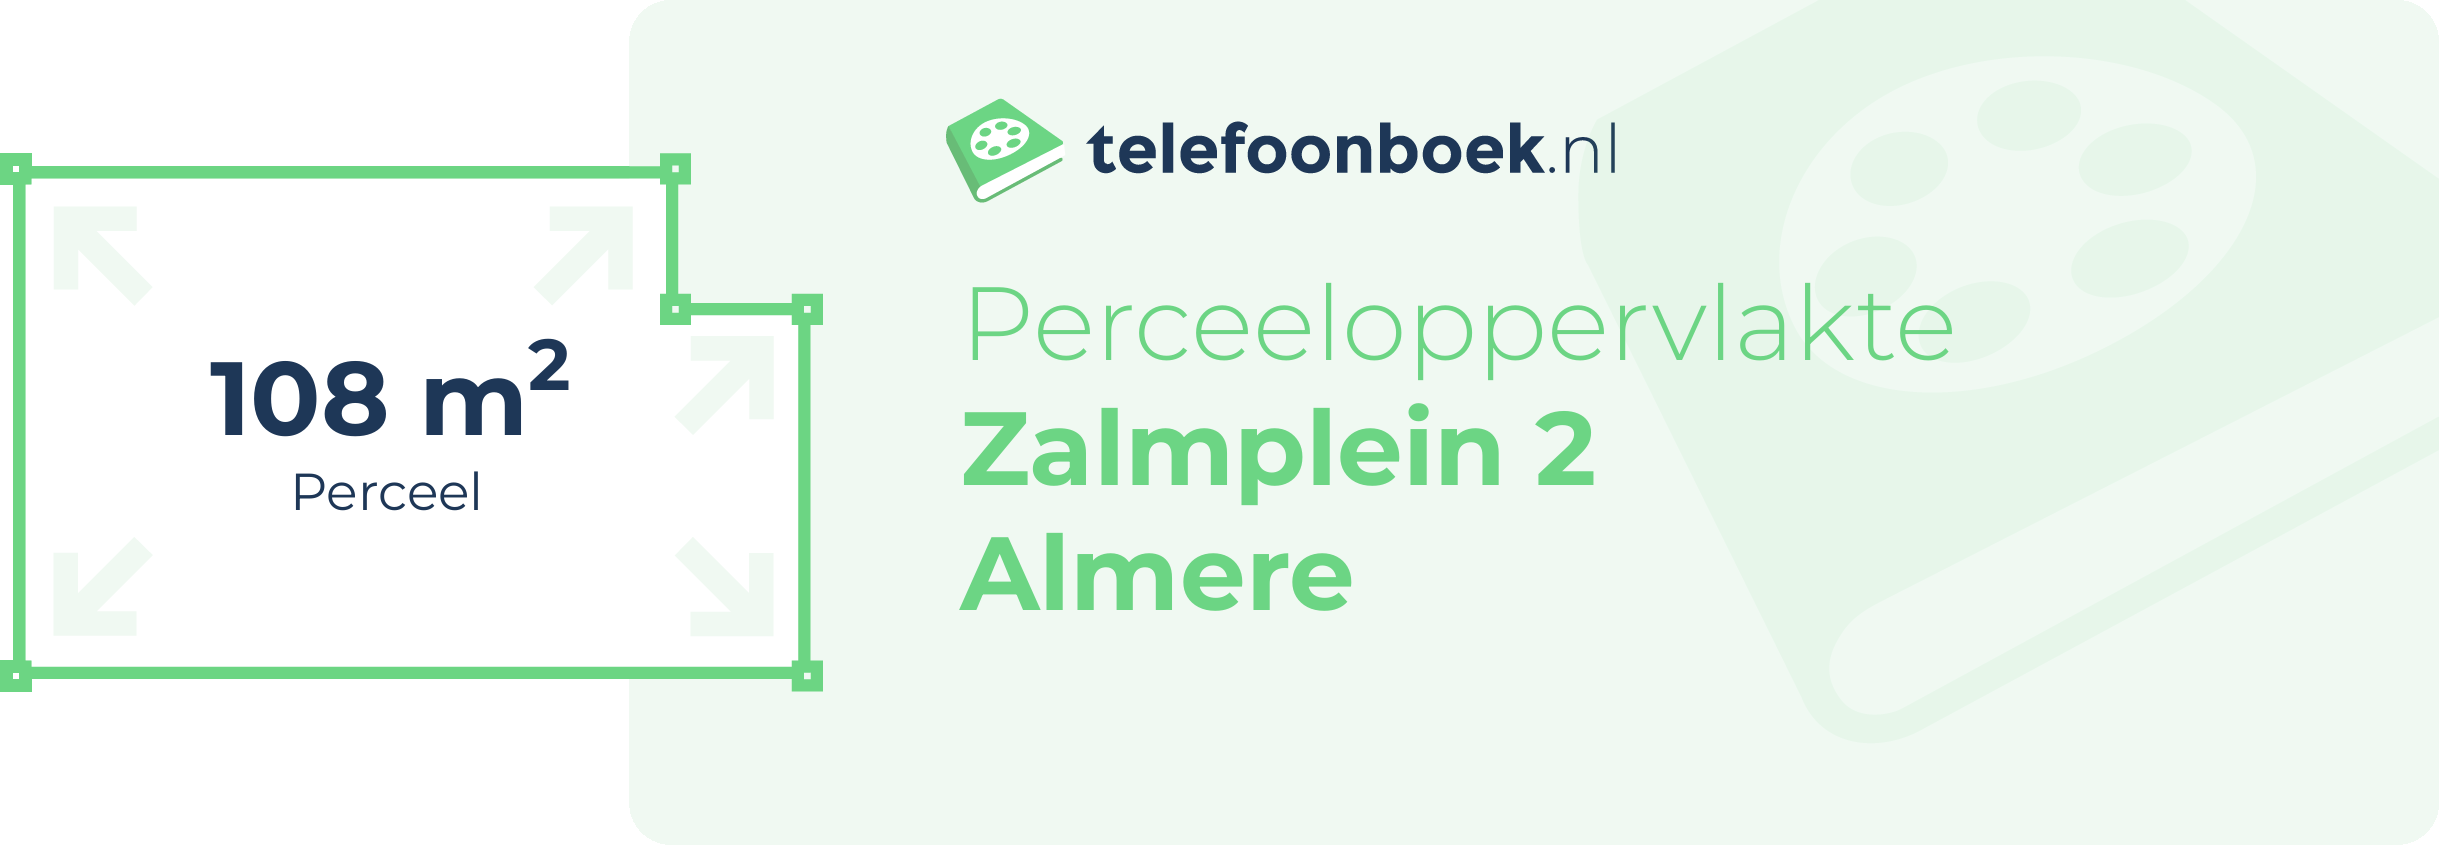 Perceeloppervlakte Zalmplein 2 Almere